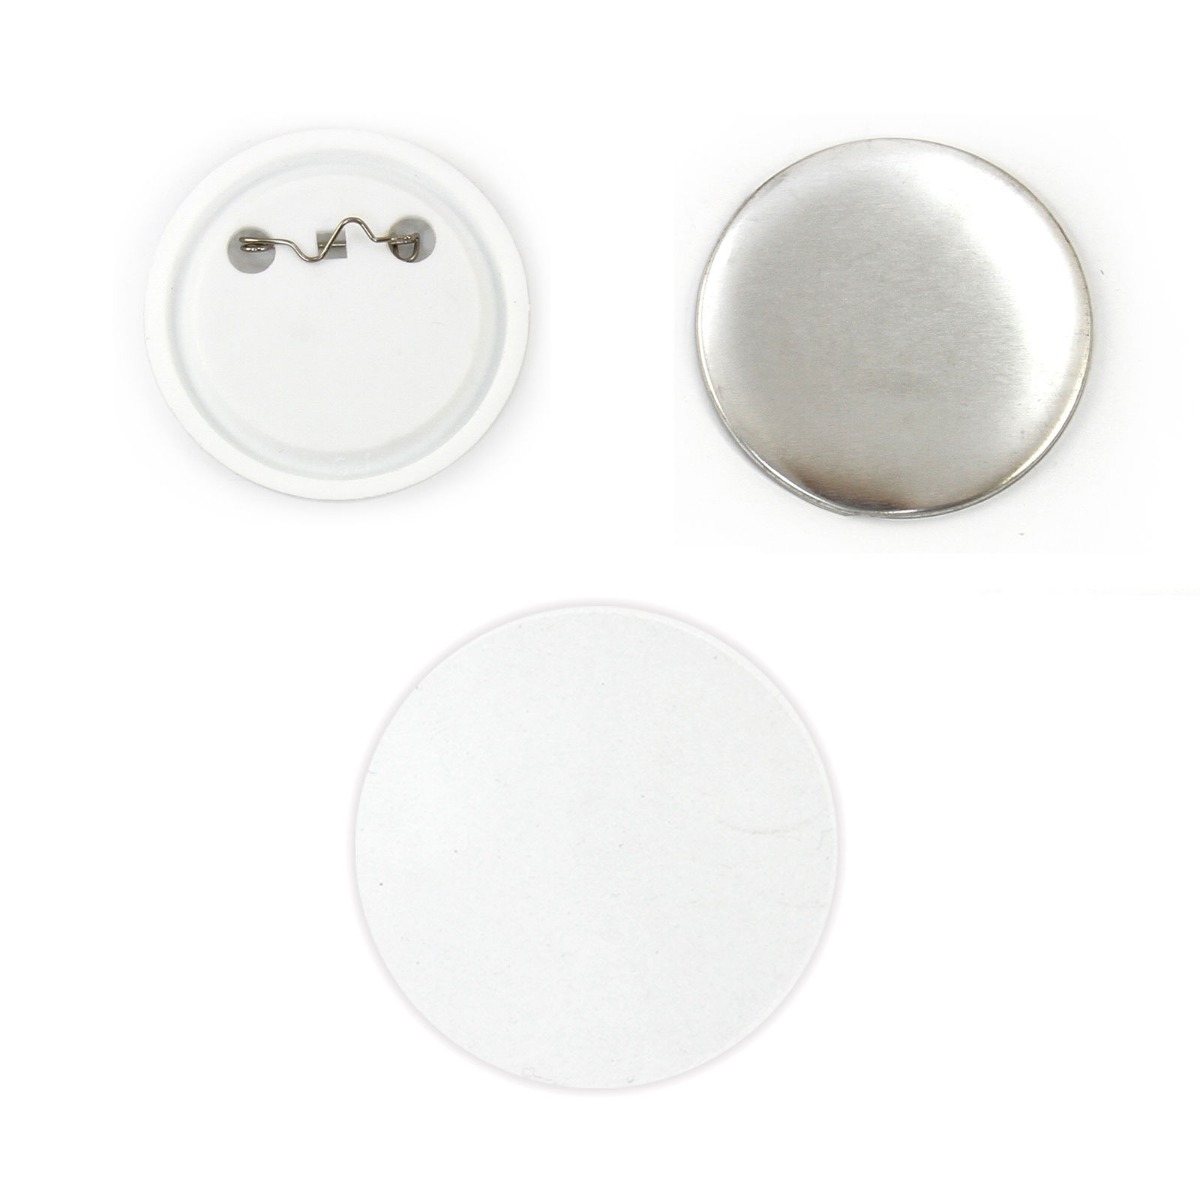 PixMax 37mm Buttons Buttonrohlinge Anstecker Buttons bedrucken 100 Stück für Buttomnaschine Buttonpresse Badge-Maker